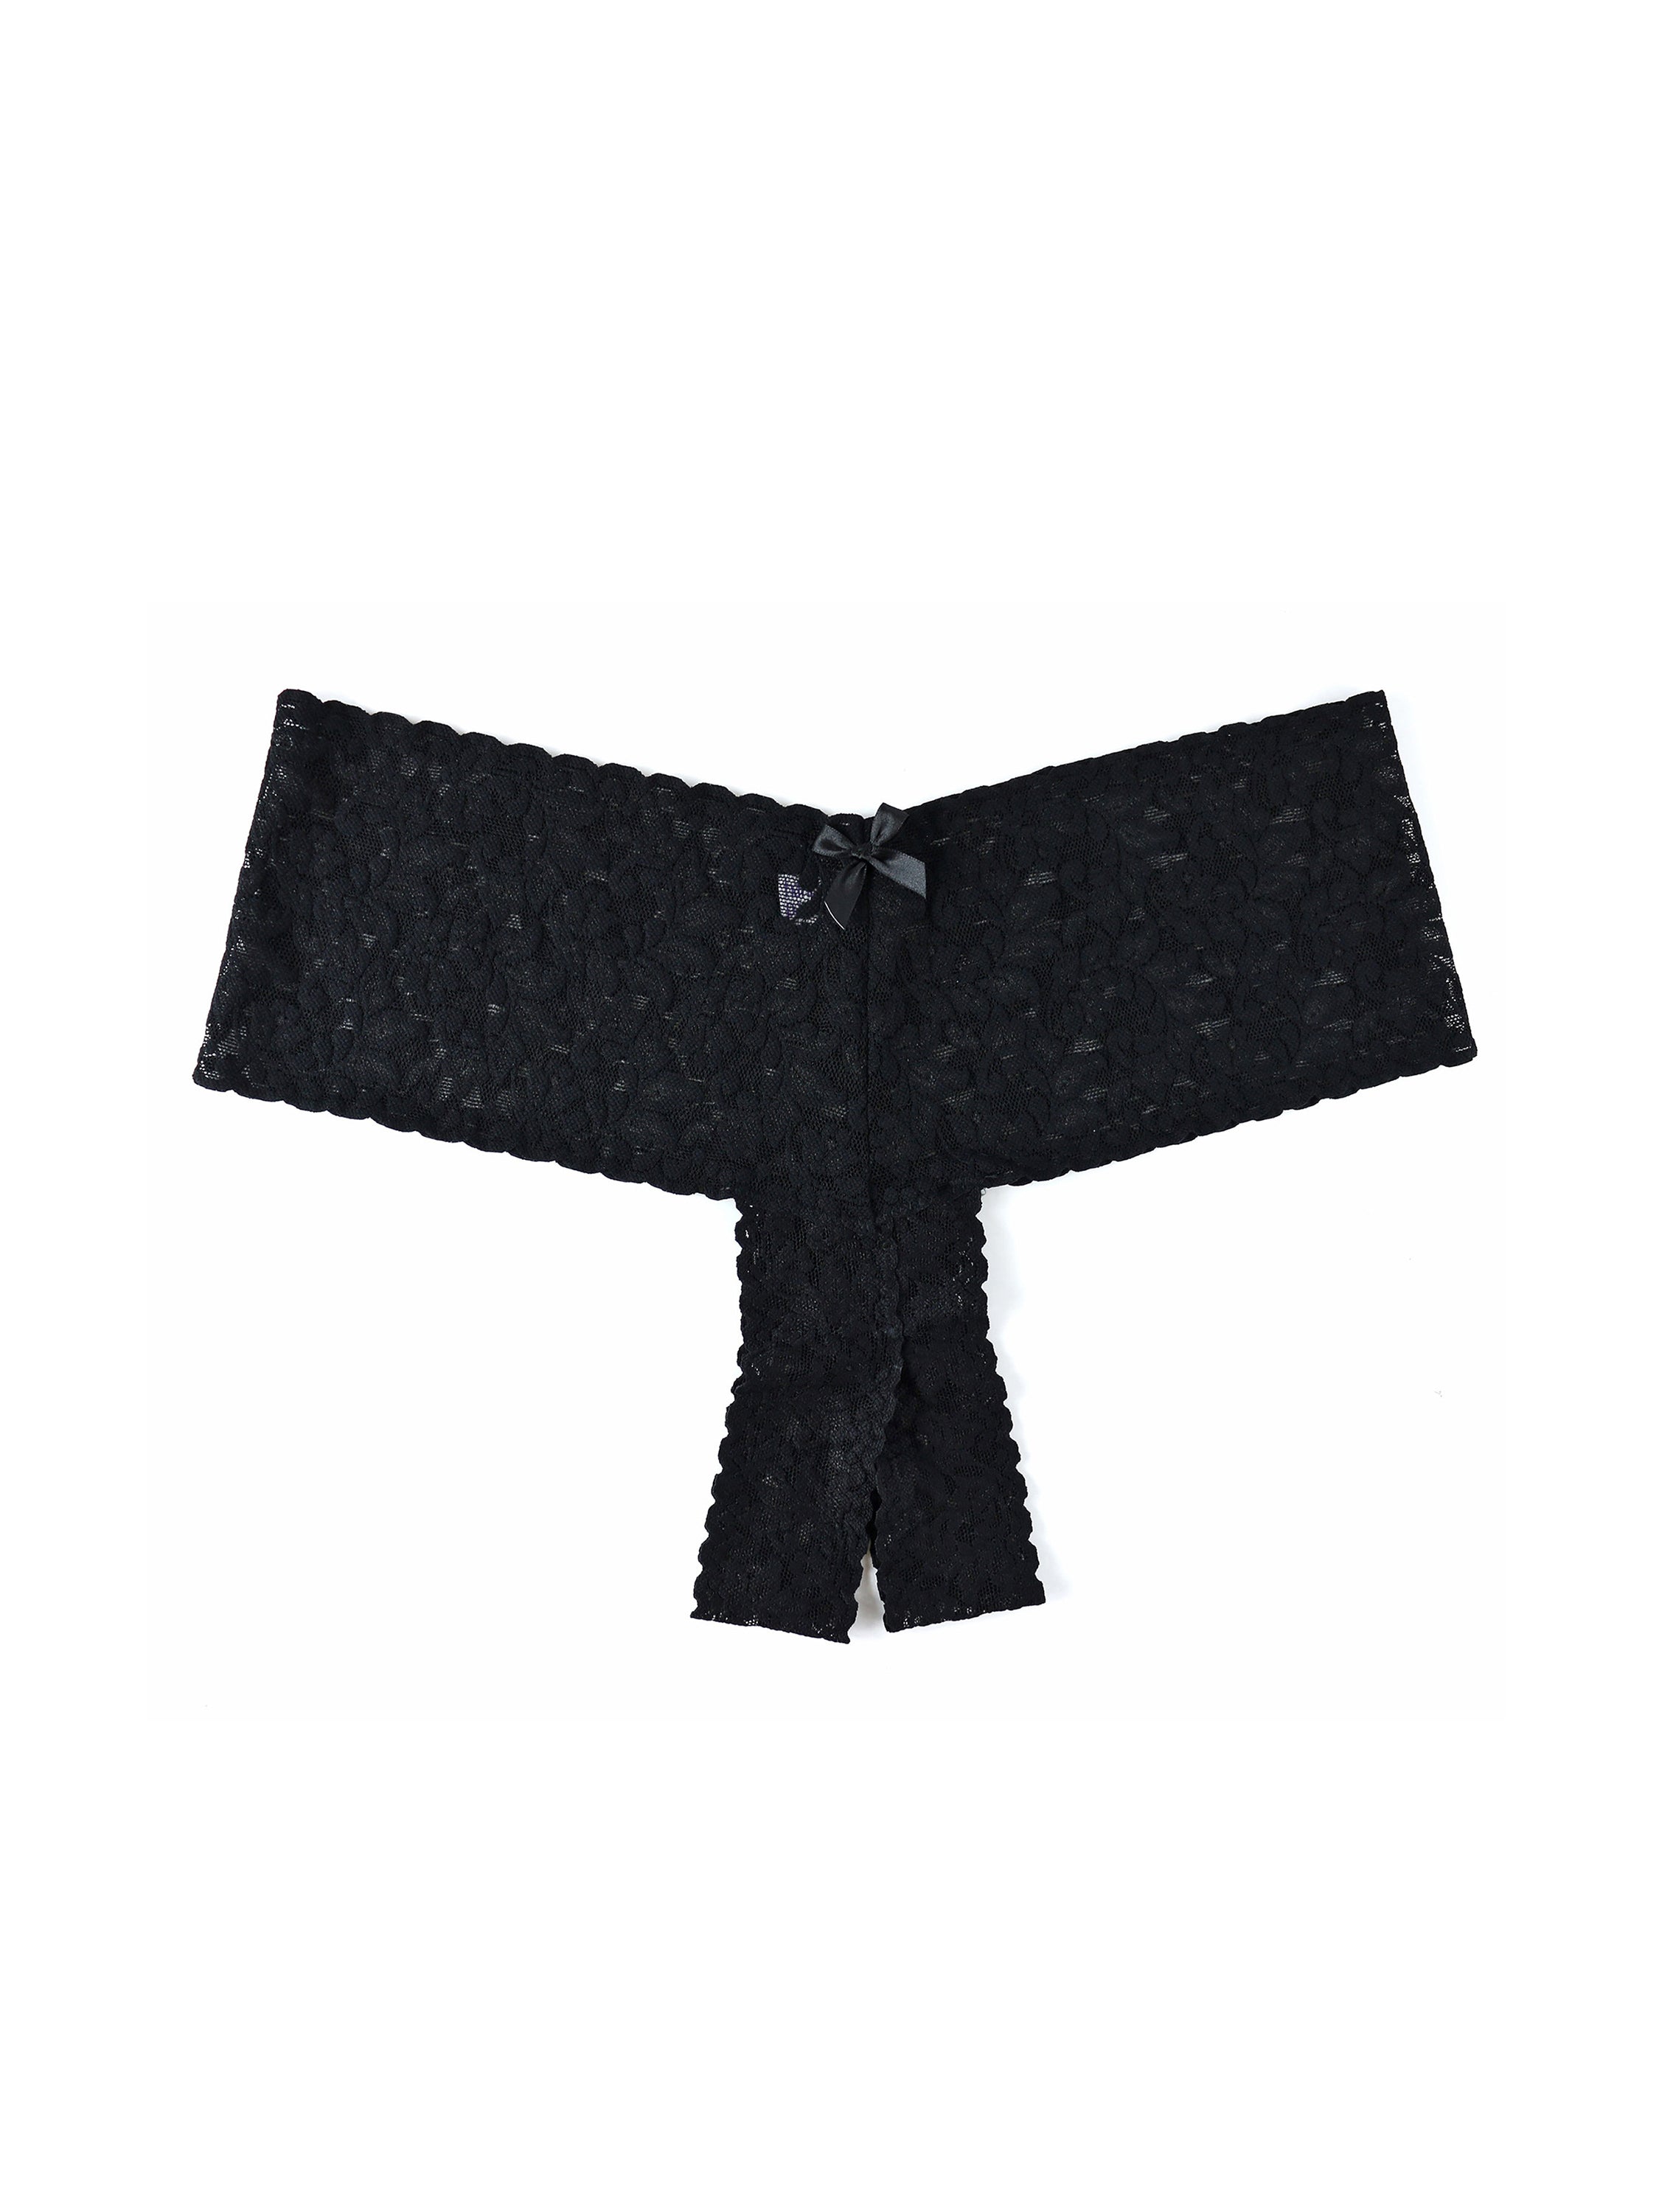 Retro Thong Plus Panty Black 9K1926X - Lace & Day